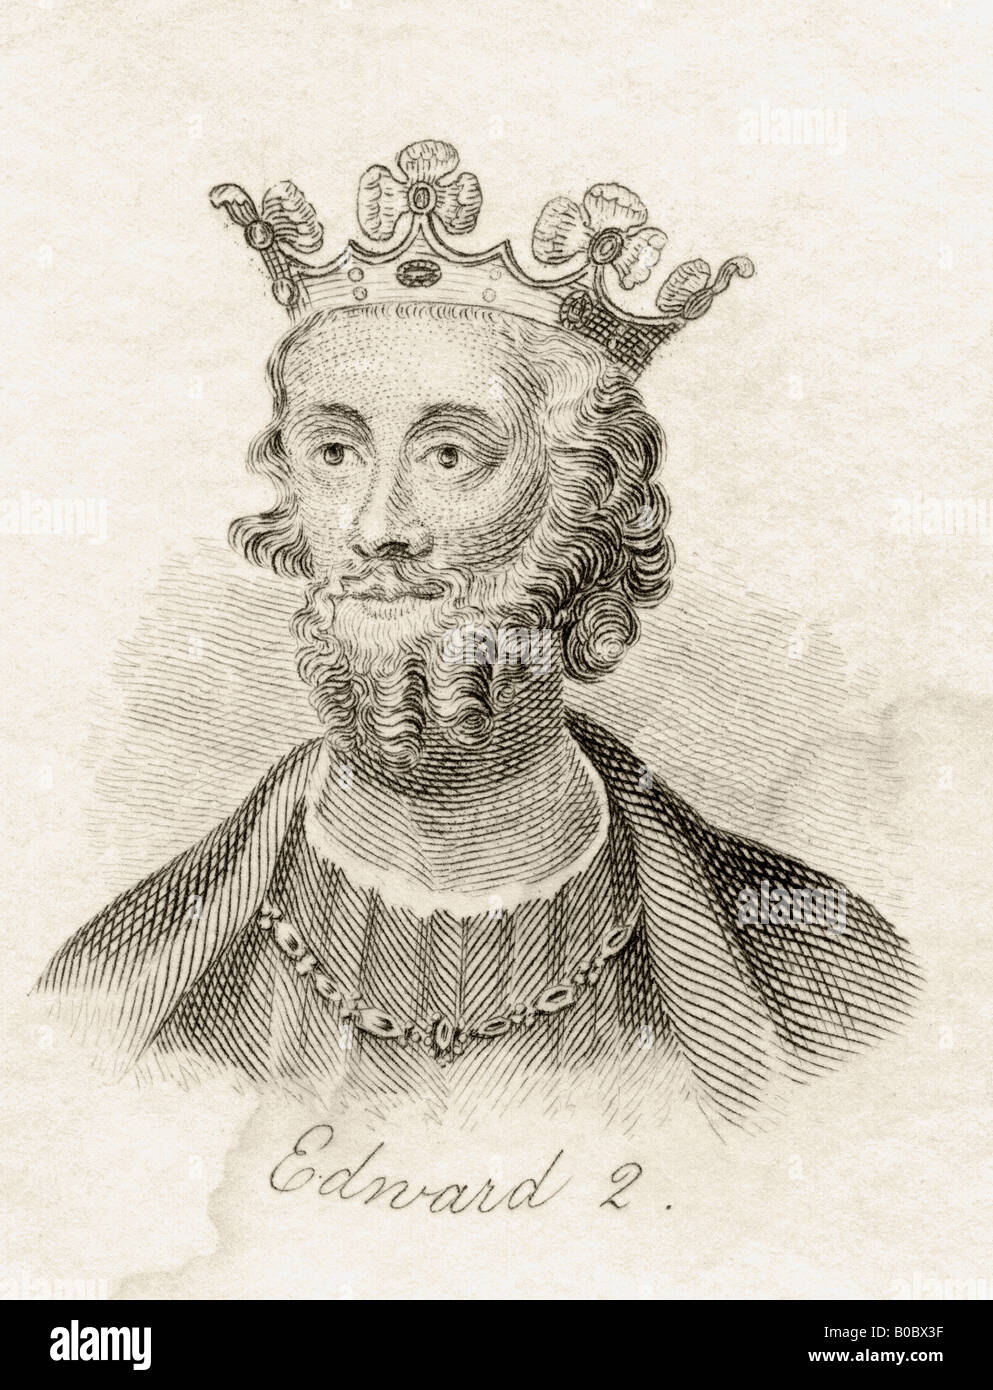 Edoardo II di Caernarfon, 1284 - 1327. Re d'Inghilterra, 1307 - 1327. Dal libro Crabbs Historical Dictionary, pubblicato nel 1825. Foto Stock